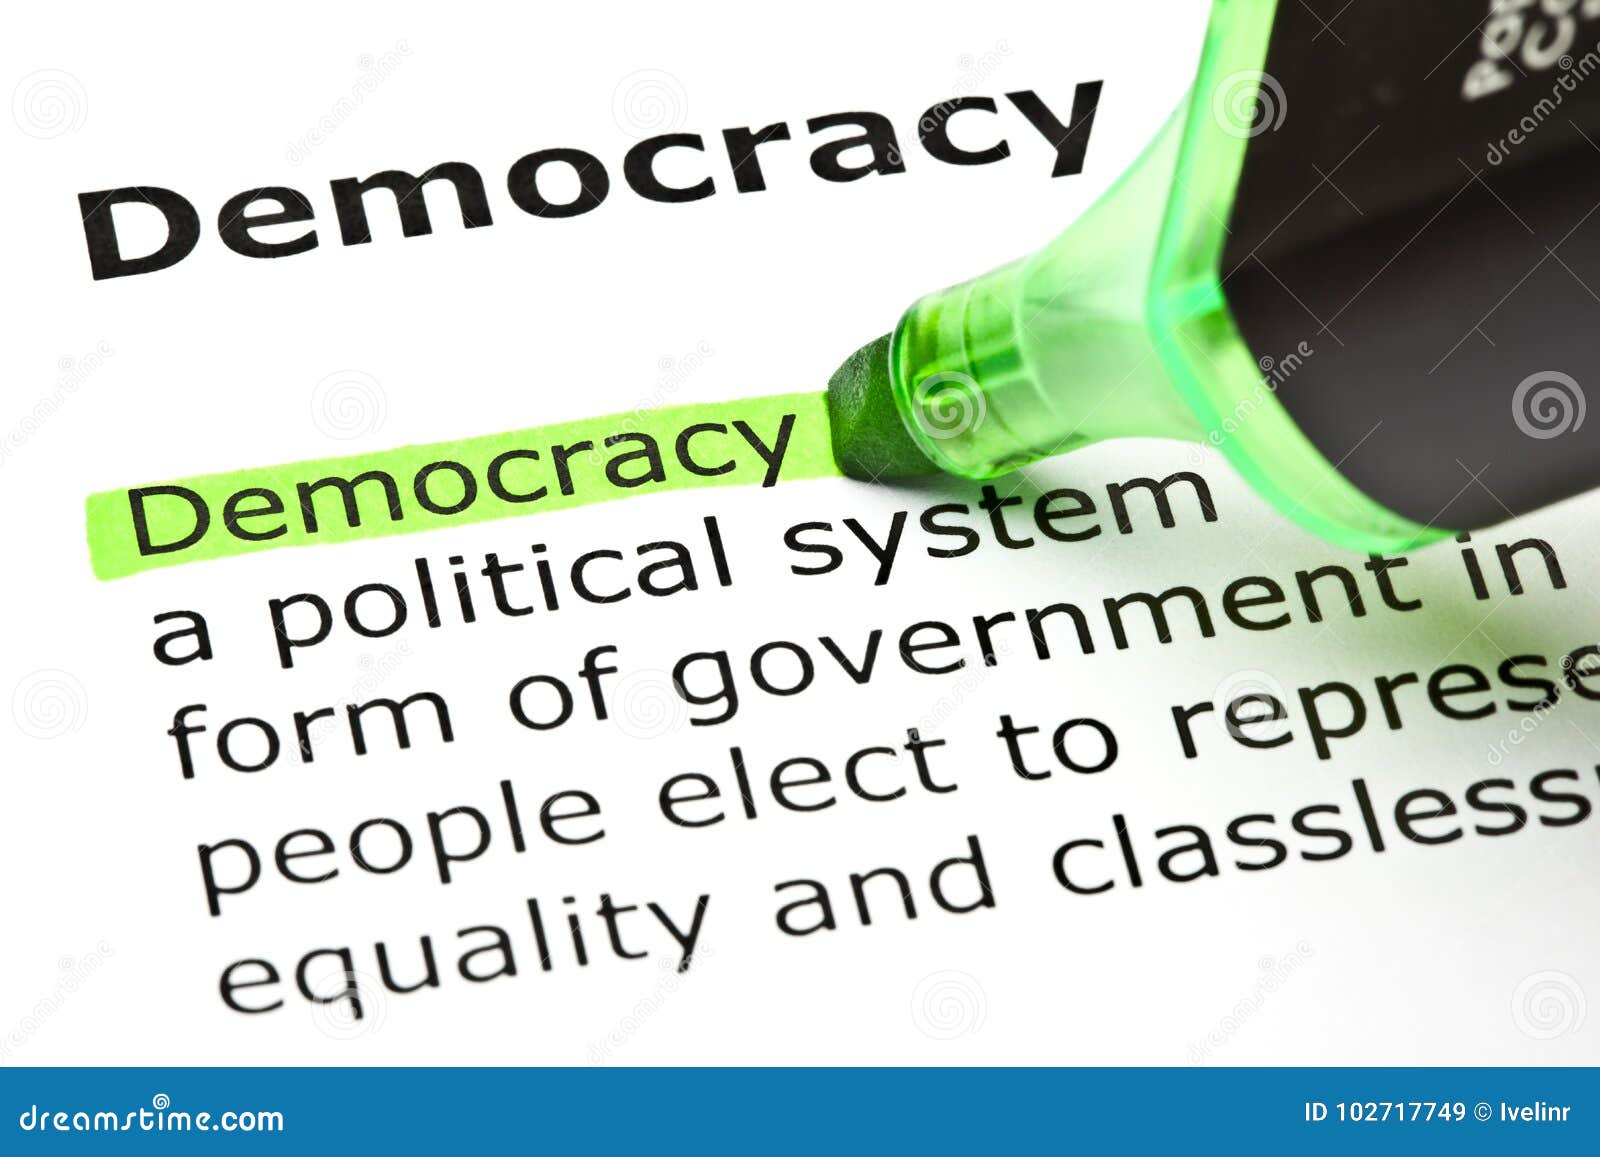 define democracy essay